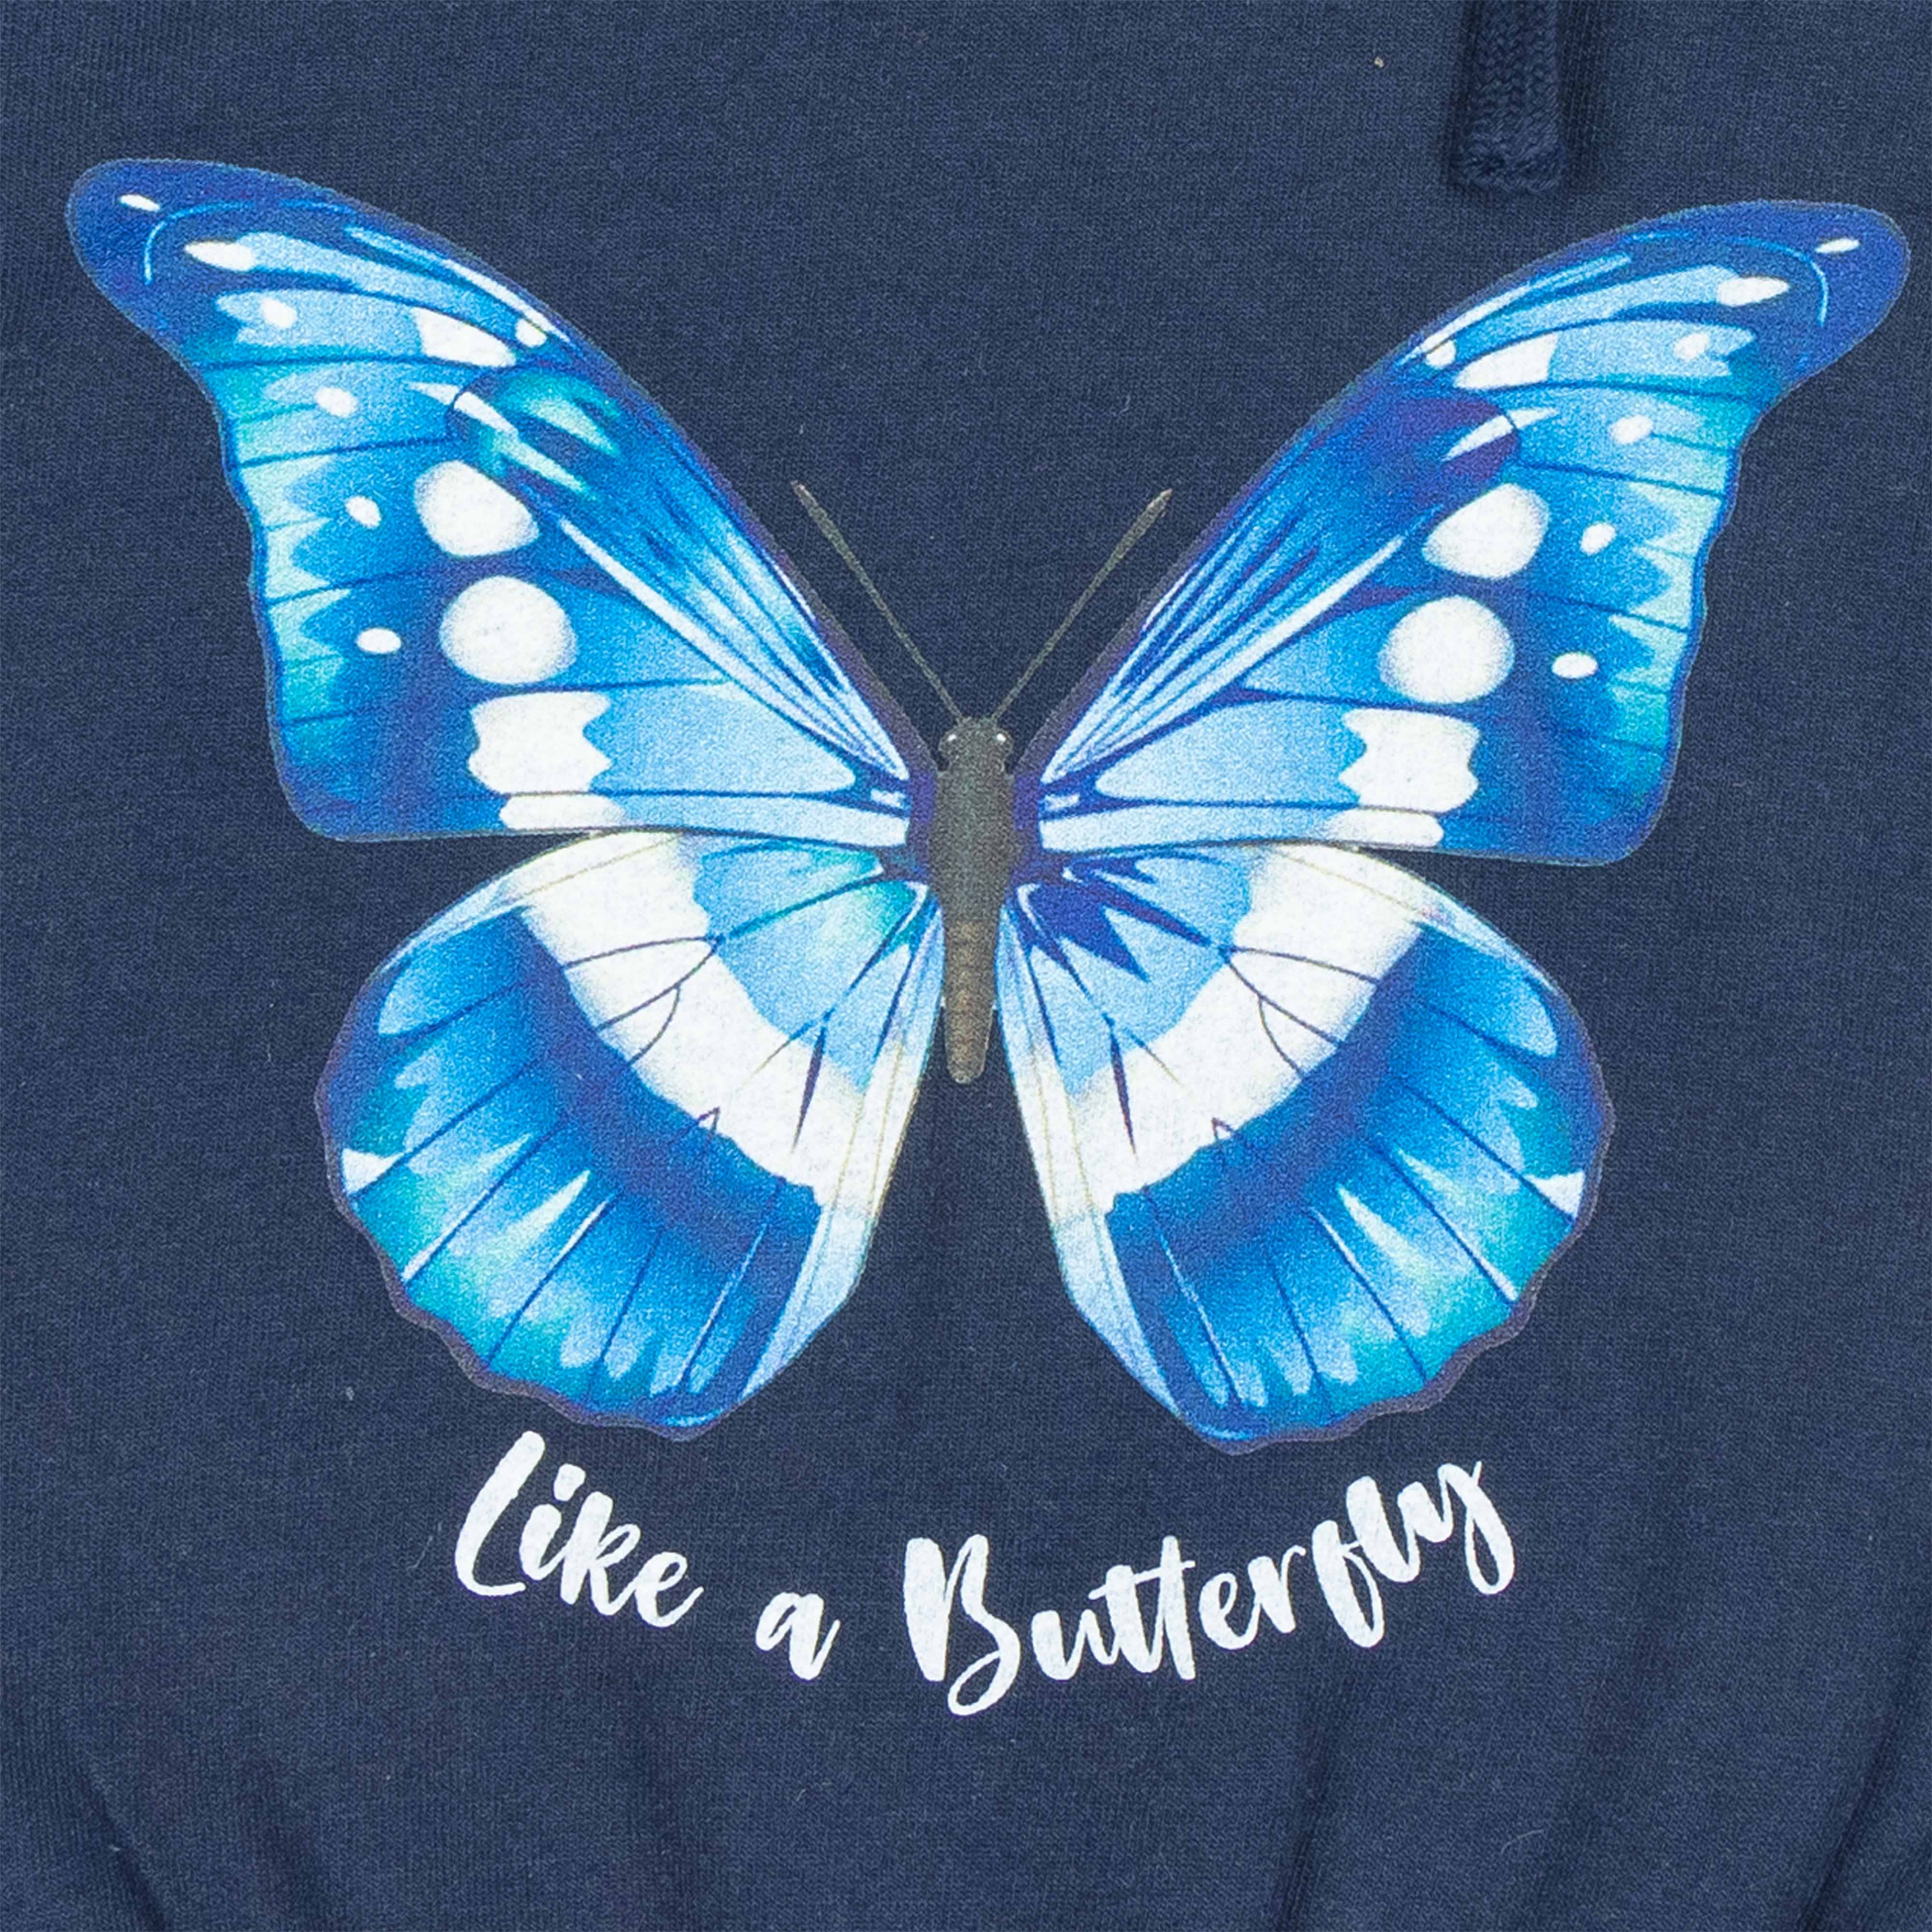 Girls Full Sleeve Butterfly Printed Hoodie